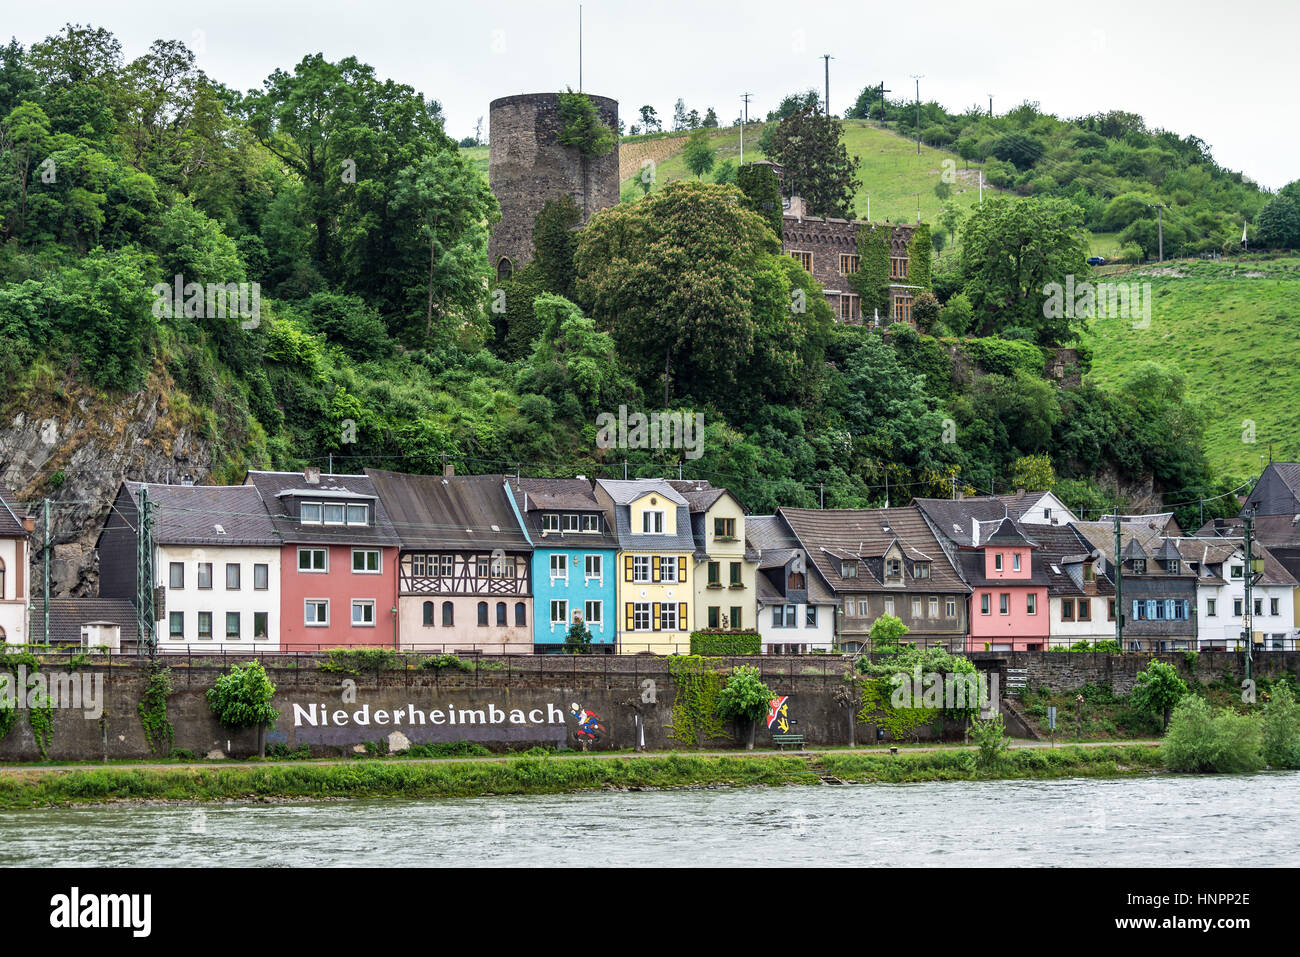 Niederheimbach, Allemagne - le 23 mai 2016 : Niederheimbach village dans la région au patrimoine mondial de l'Unesco de la vallée du Rhin par temps nuageux Banque D'Images